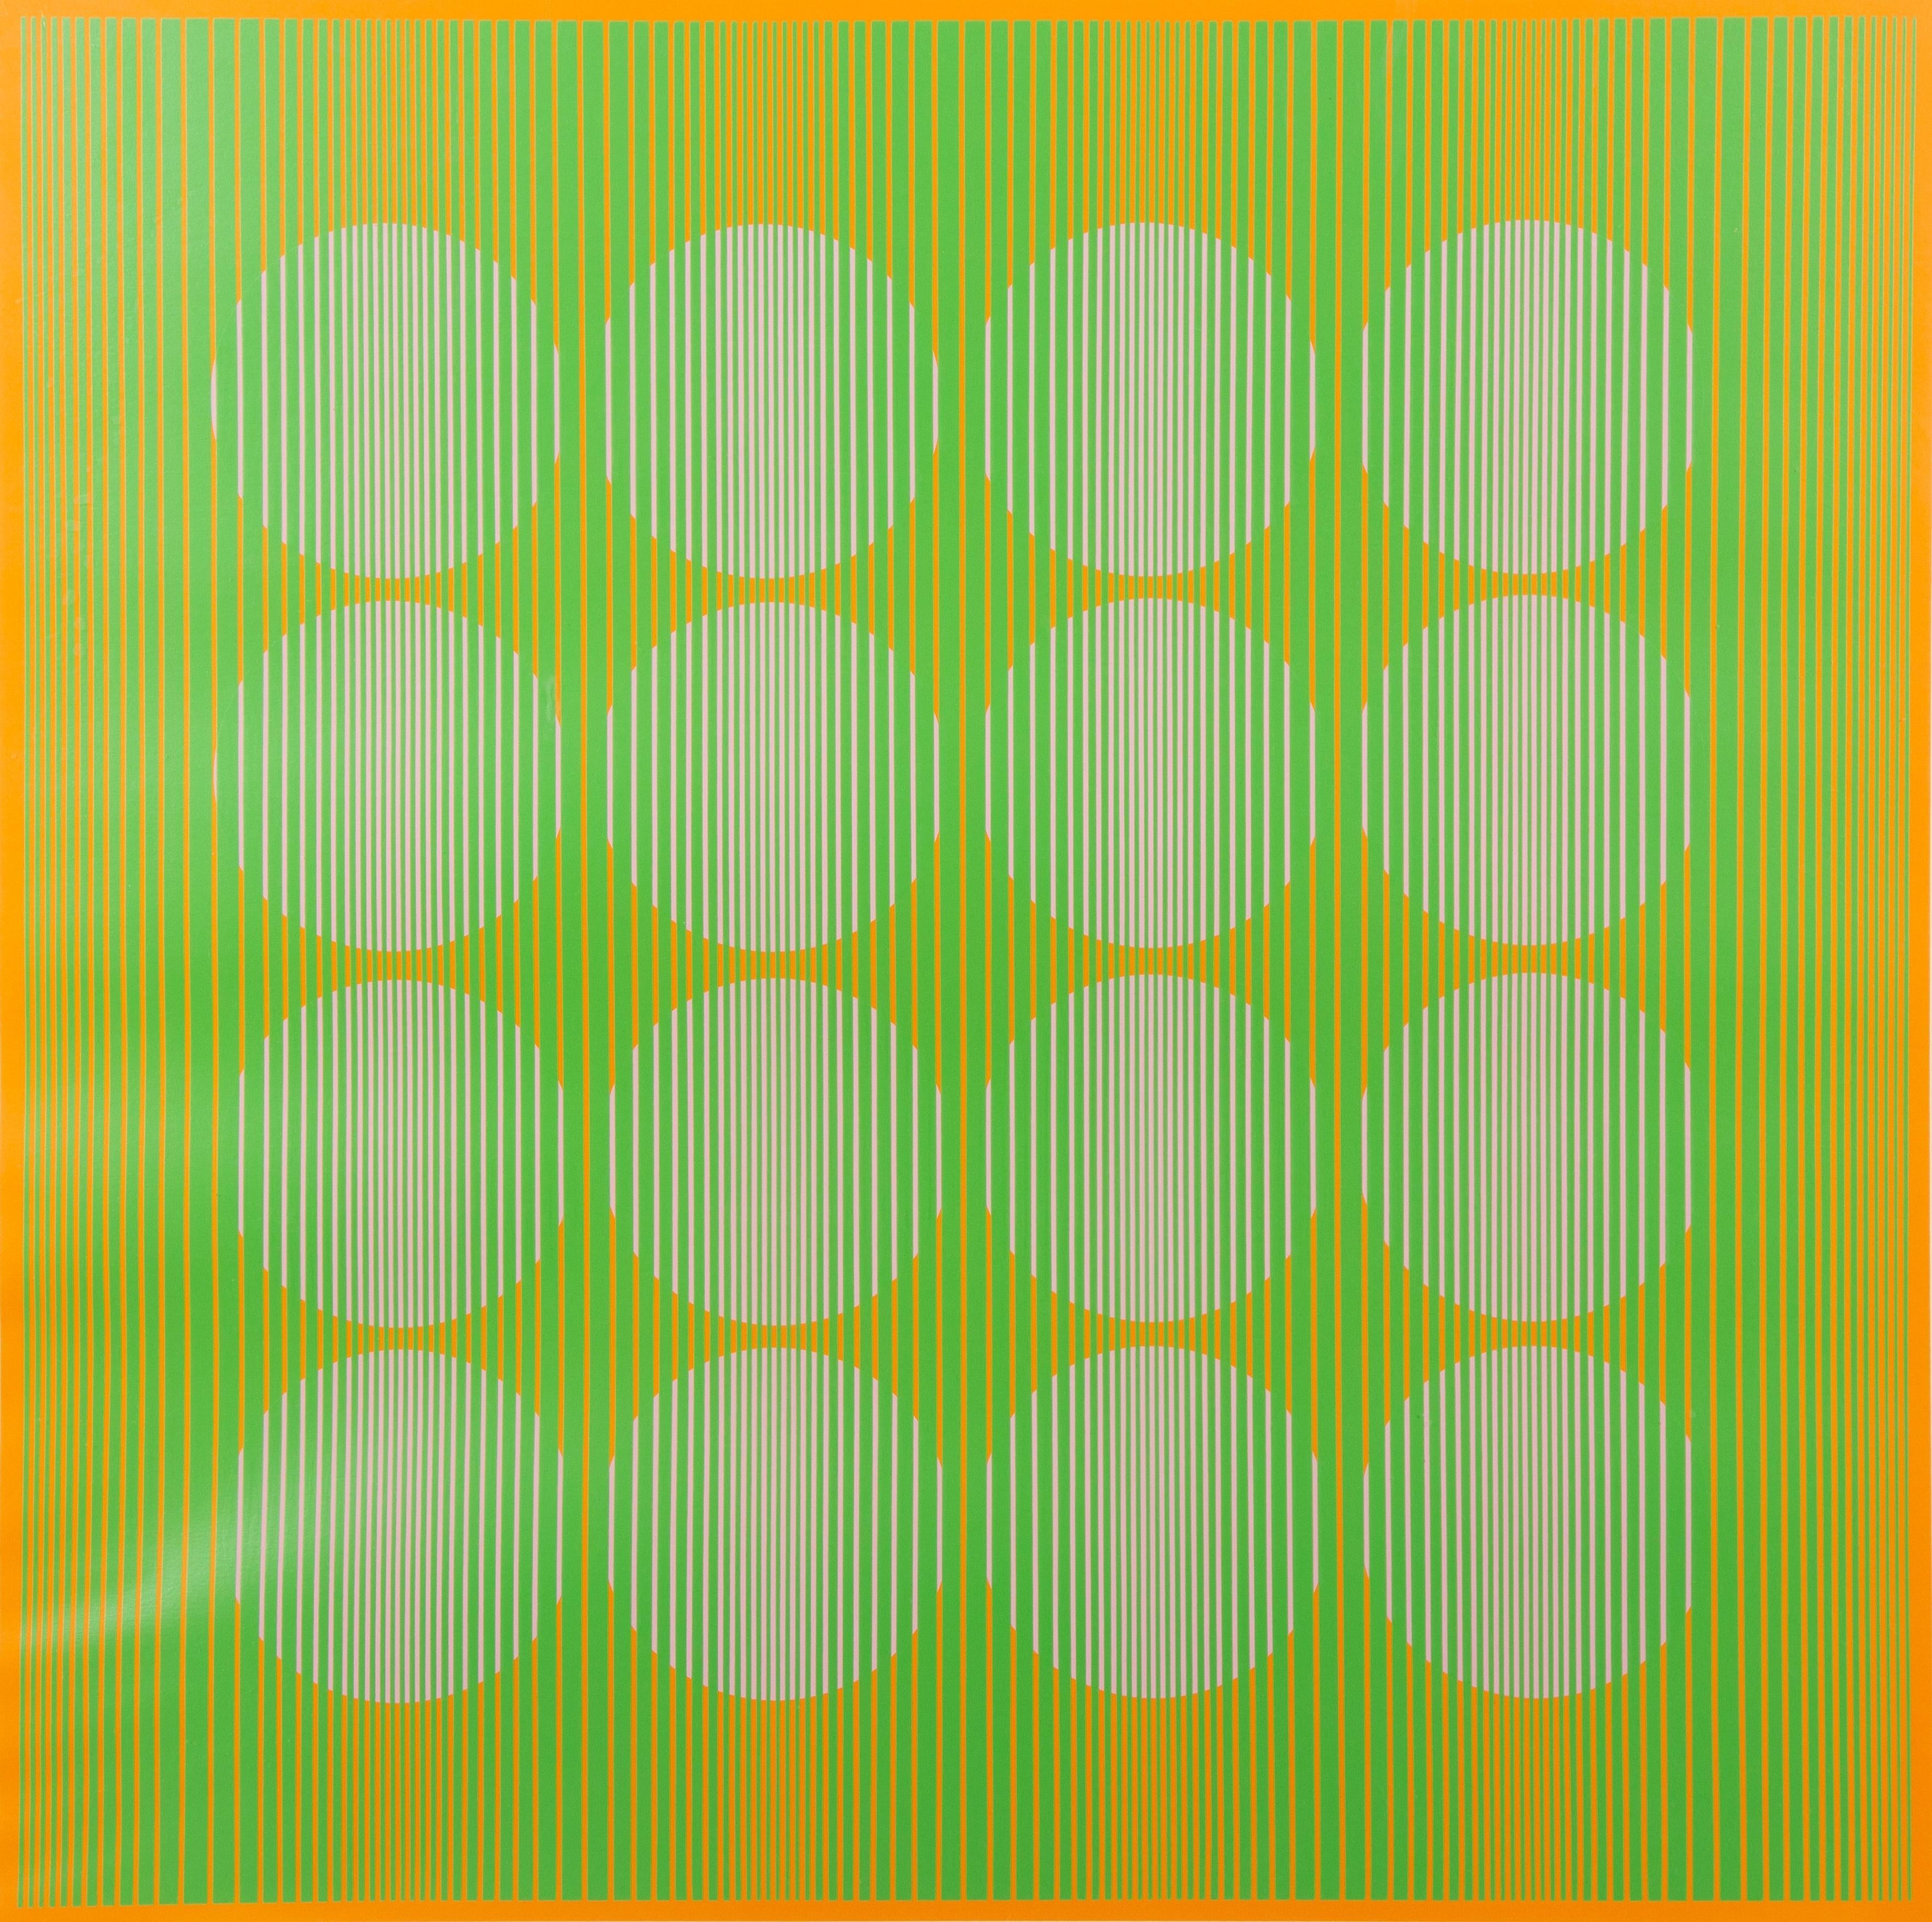 16 cercles verts de la série des huit variantes, 1970 - Print de Julian Stanczak